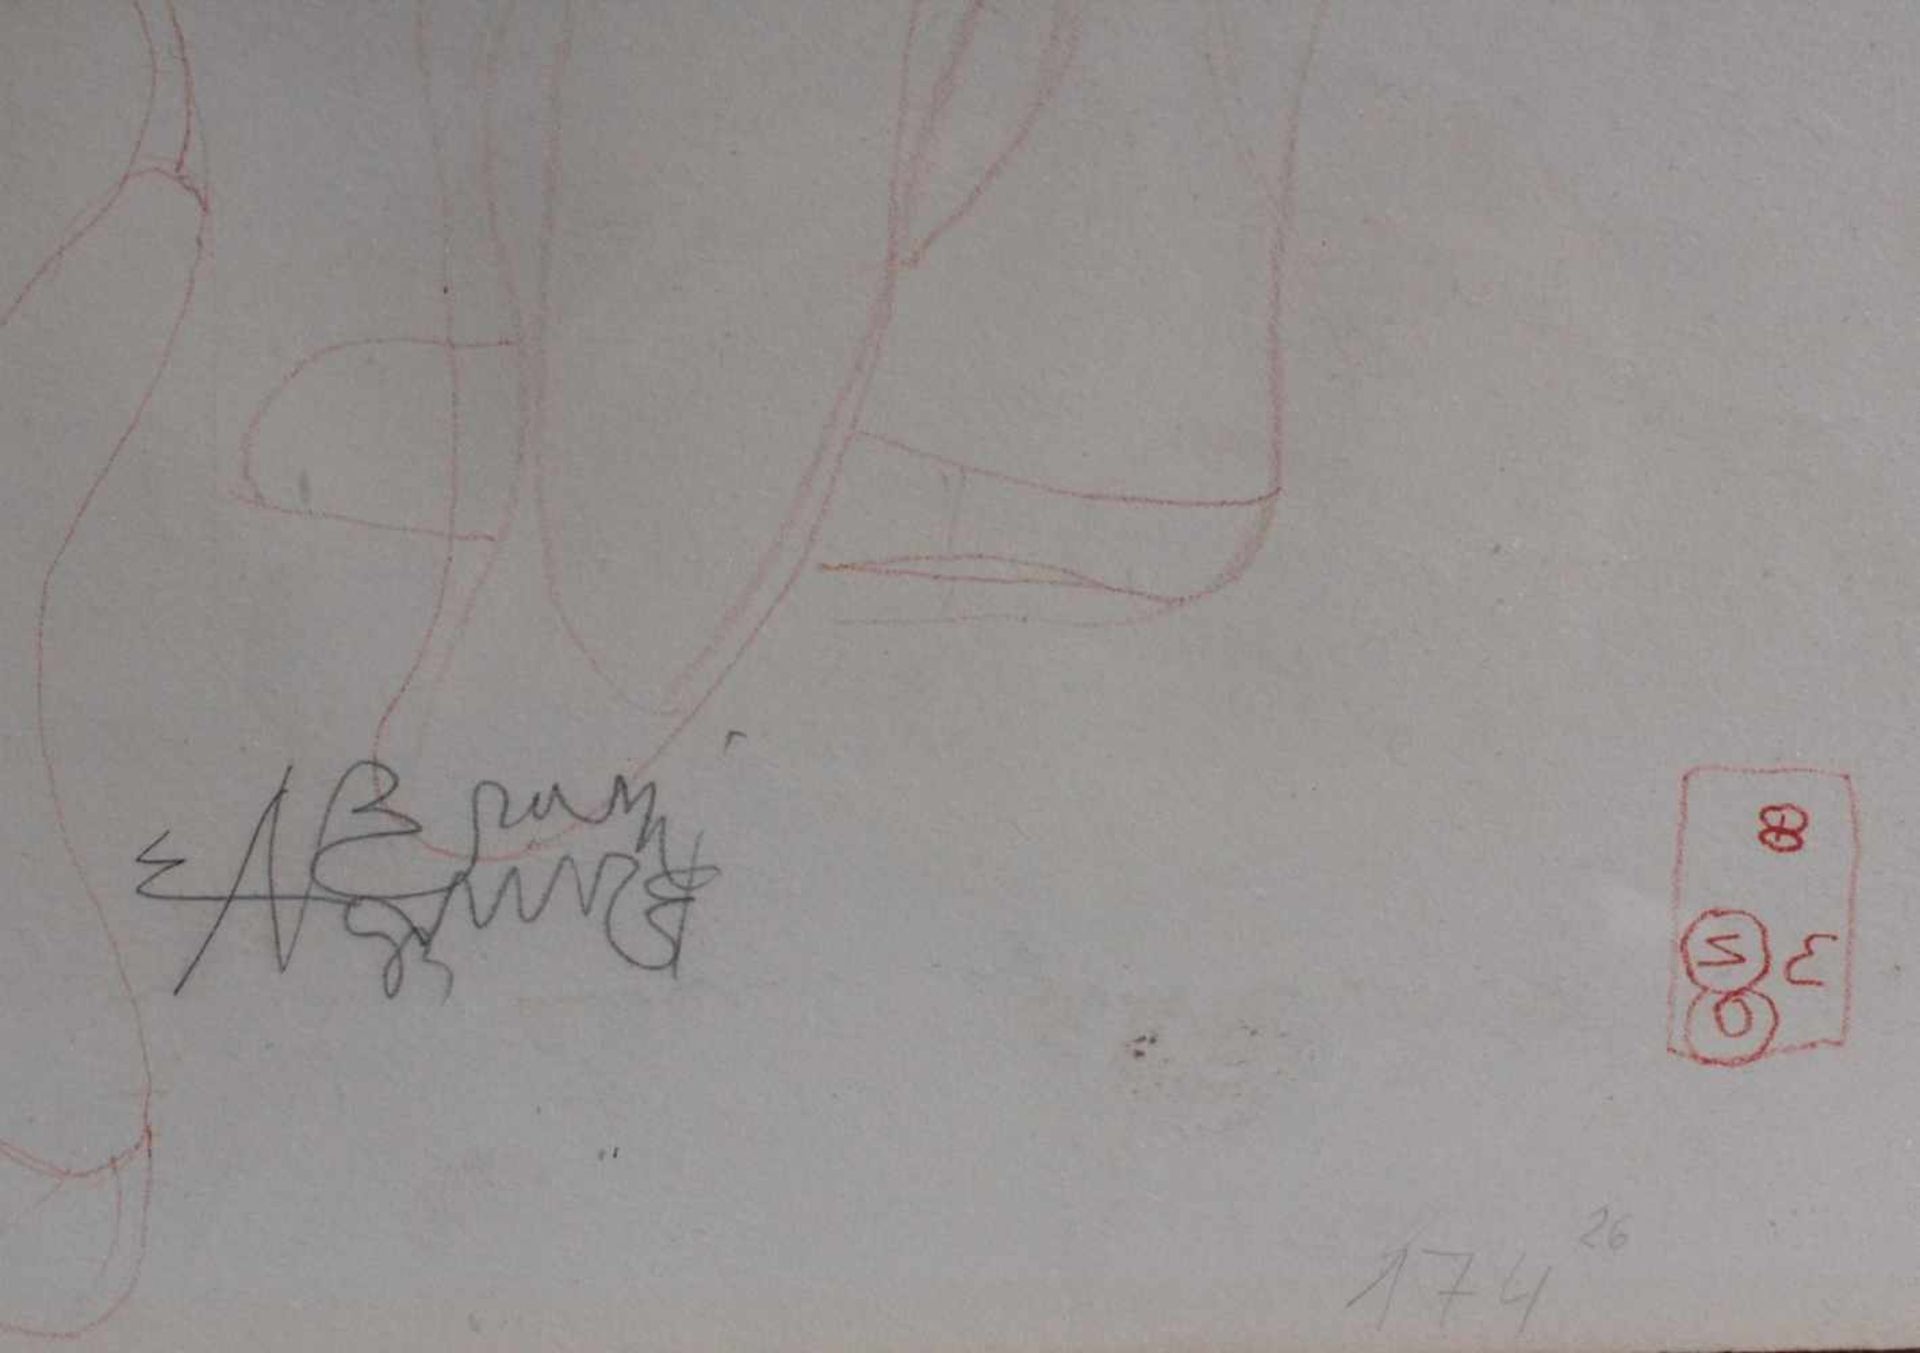 Bruno Bruni (1935)Farblithographie, "Ballerine", handsigniert, nummeriert 175/26, ca. 80 x 60 cm. - Bild 2 aus 2